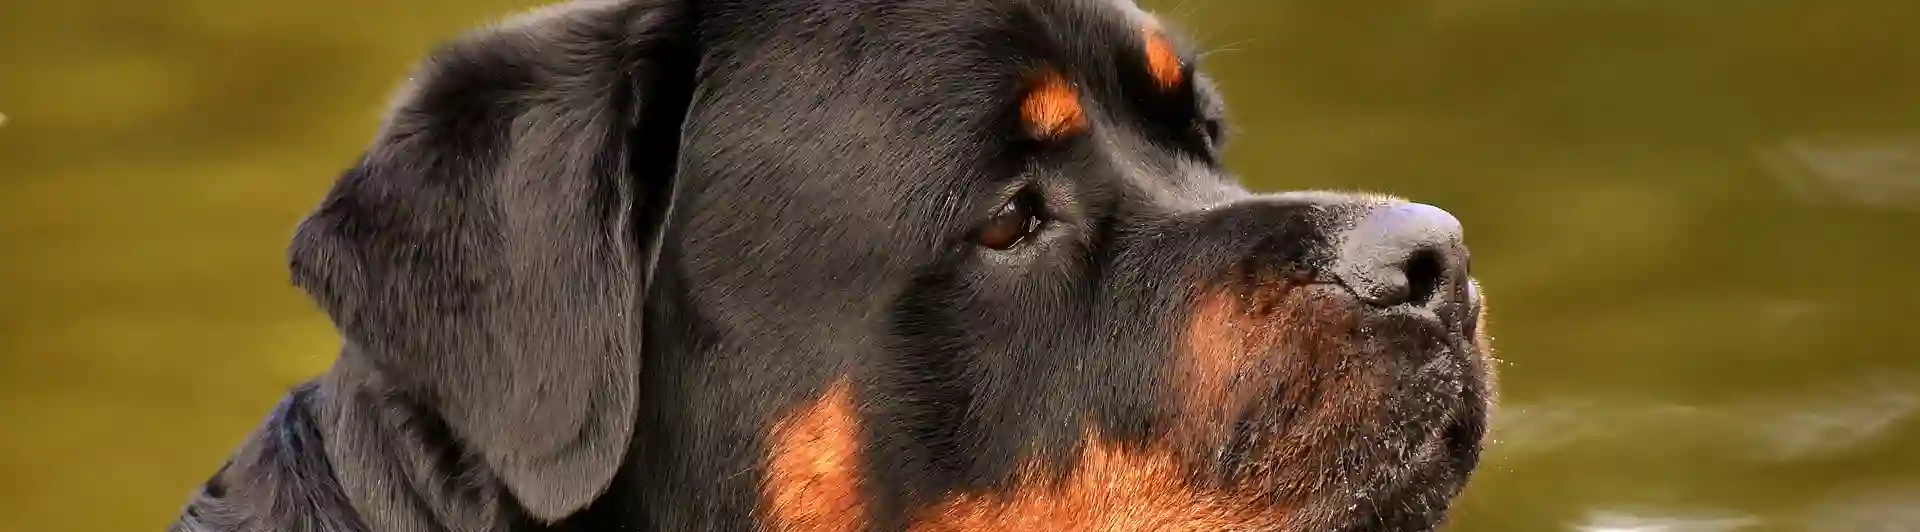 Rottweiler huvud